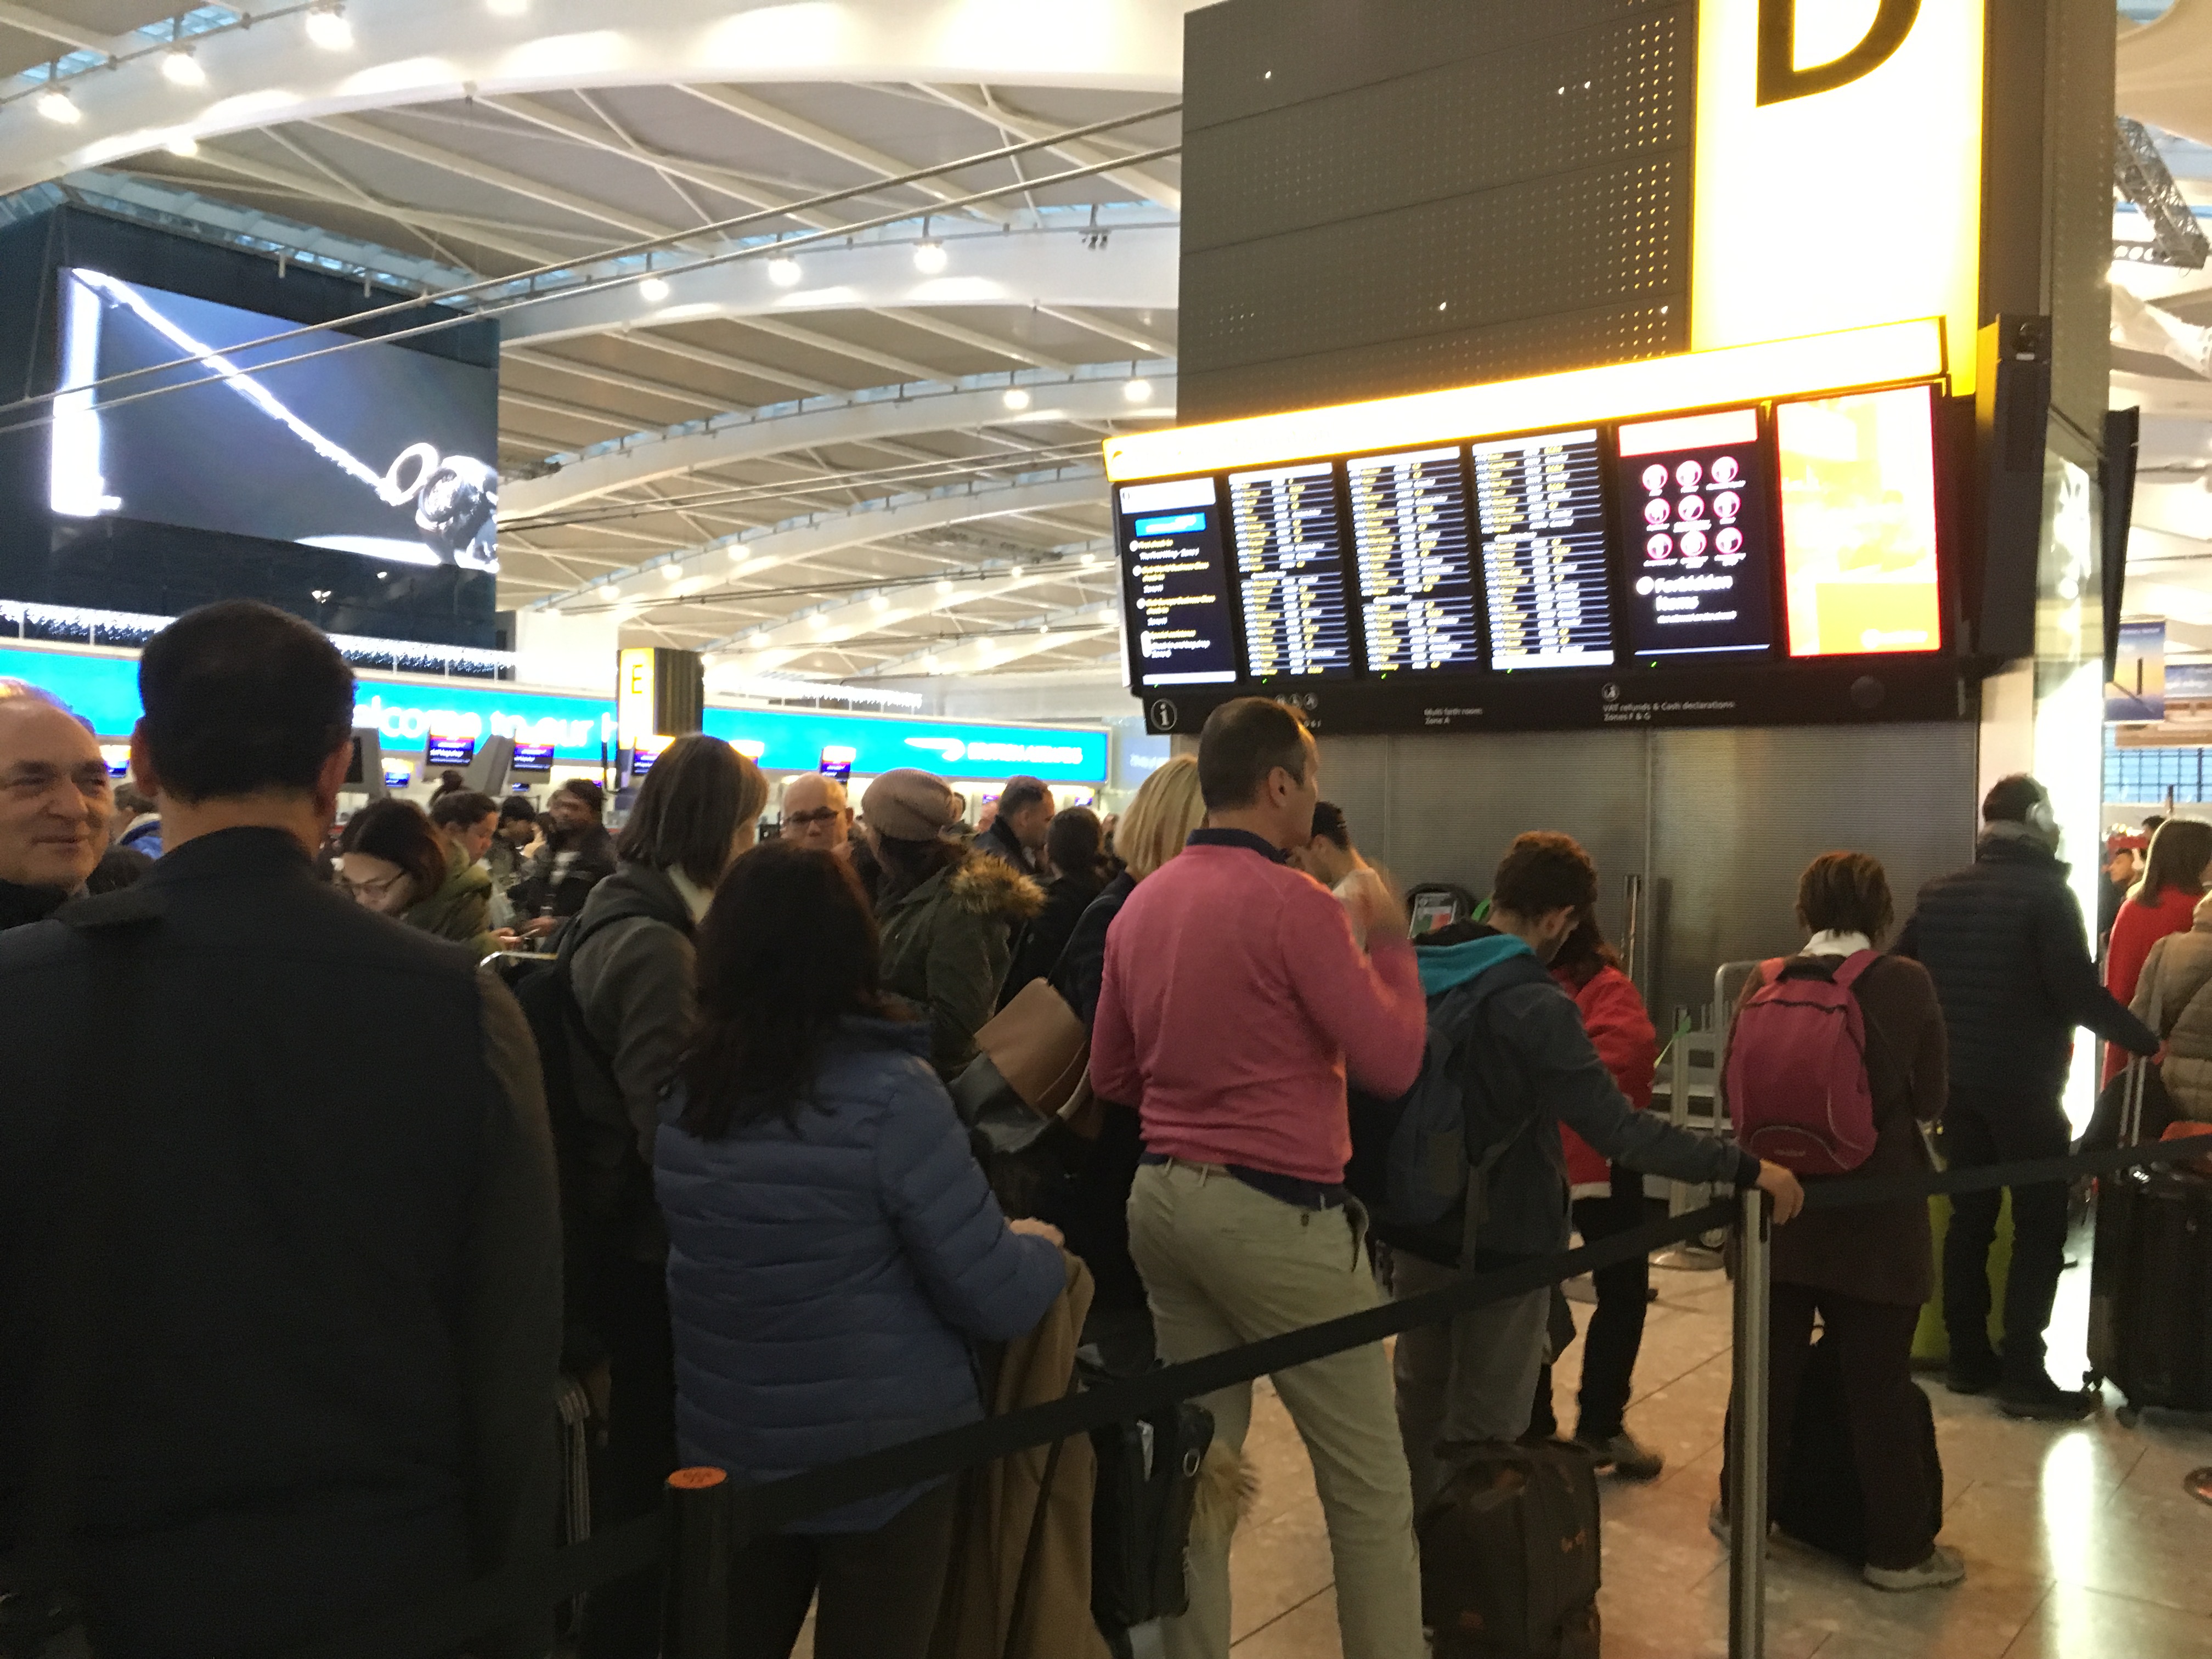 Delays at Heathrow